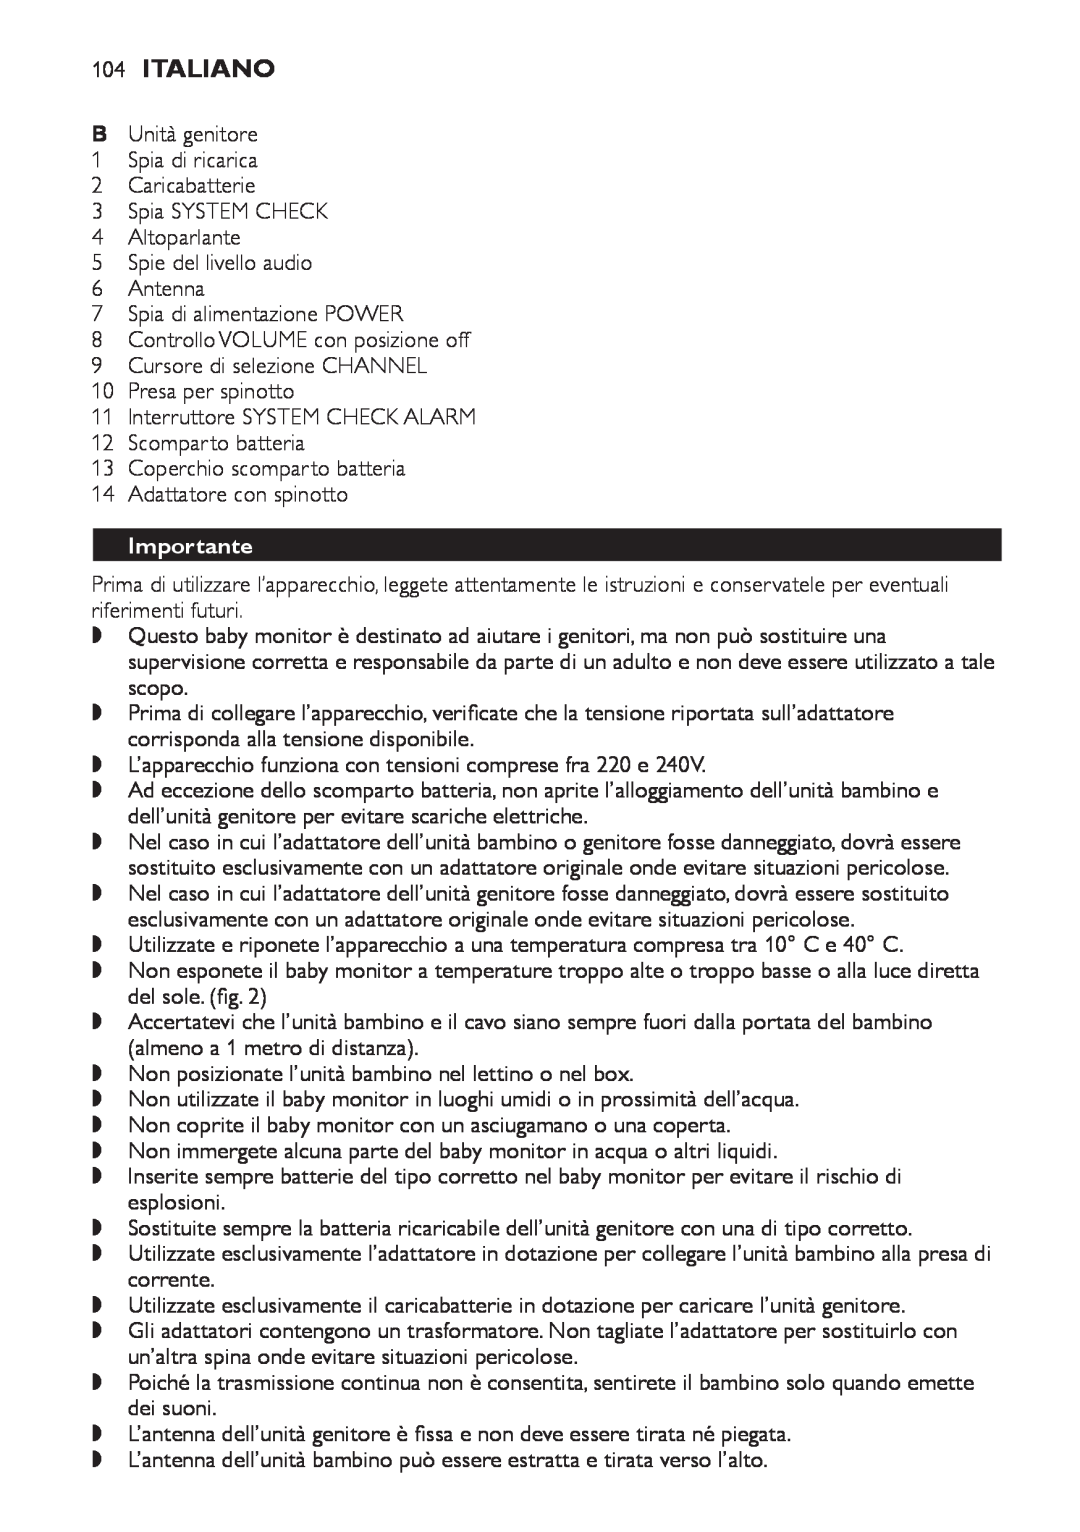 Philips SCD 469 manual 104Italiano, Importante 